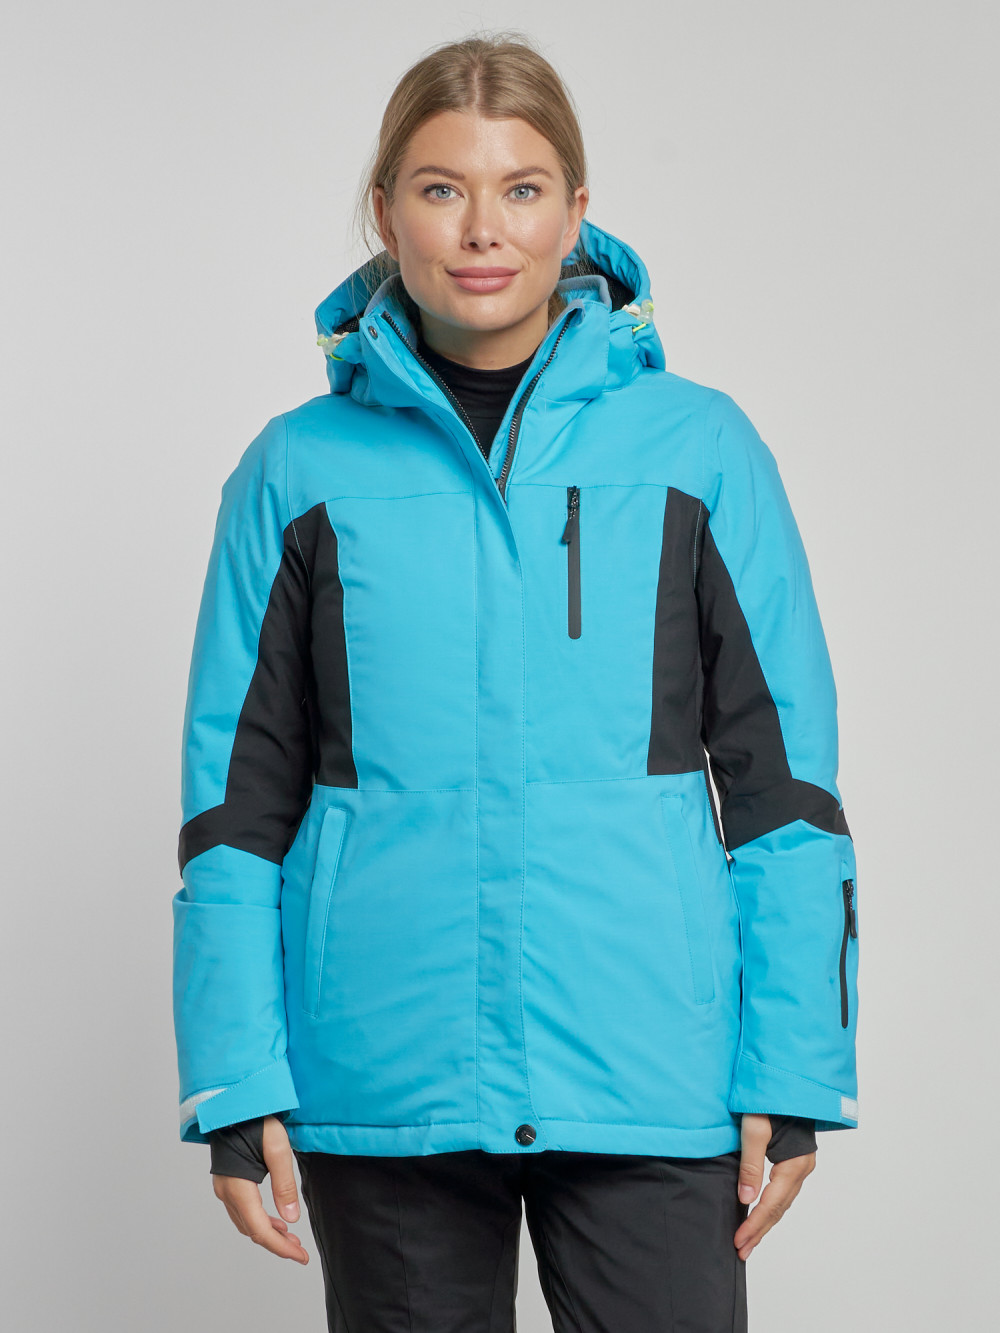 Купить оптом Горнолыжная куртка женская зимняя голубого цвета 3105Gl в Екатеринбурге